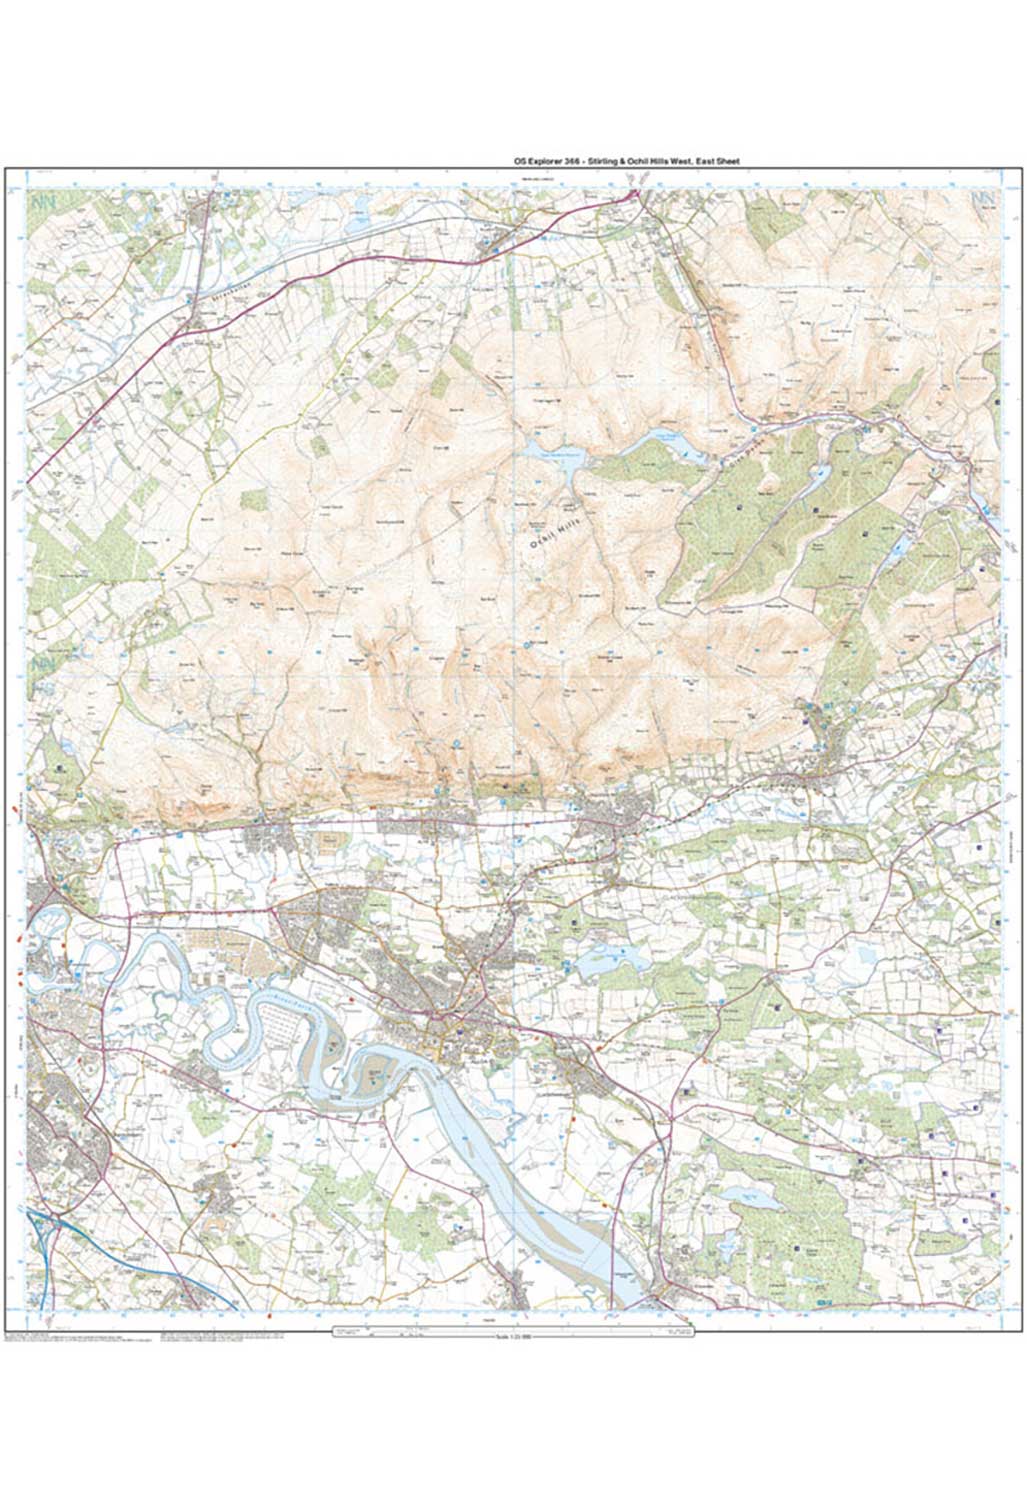 Ordnance Survey Stirling & Ochil Hills West - OS Explorer 366 Map